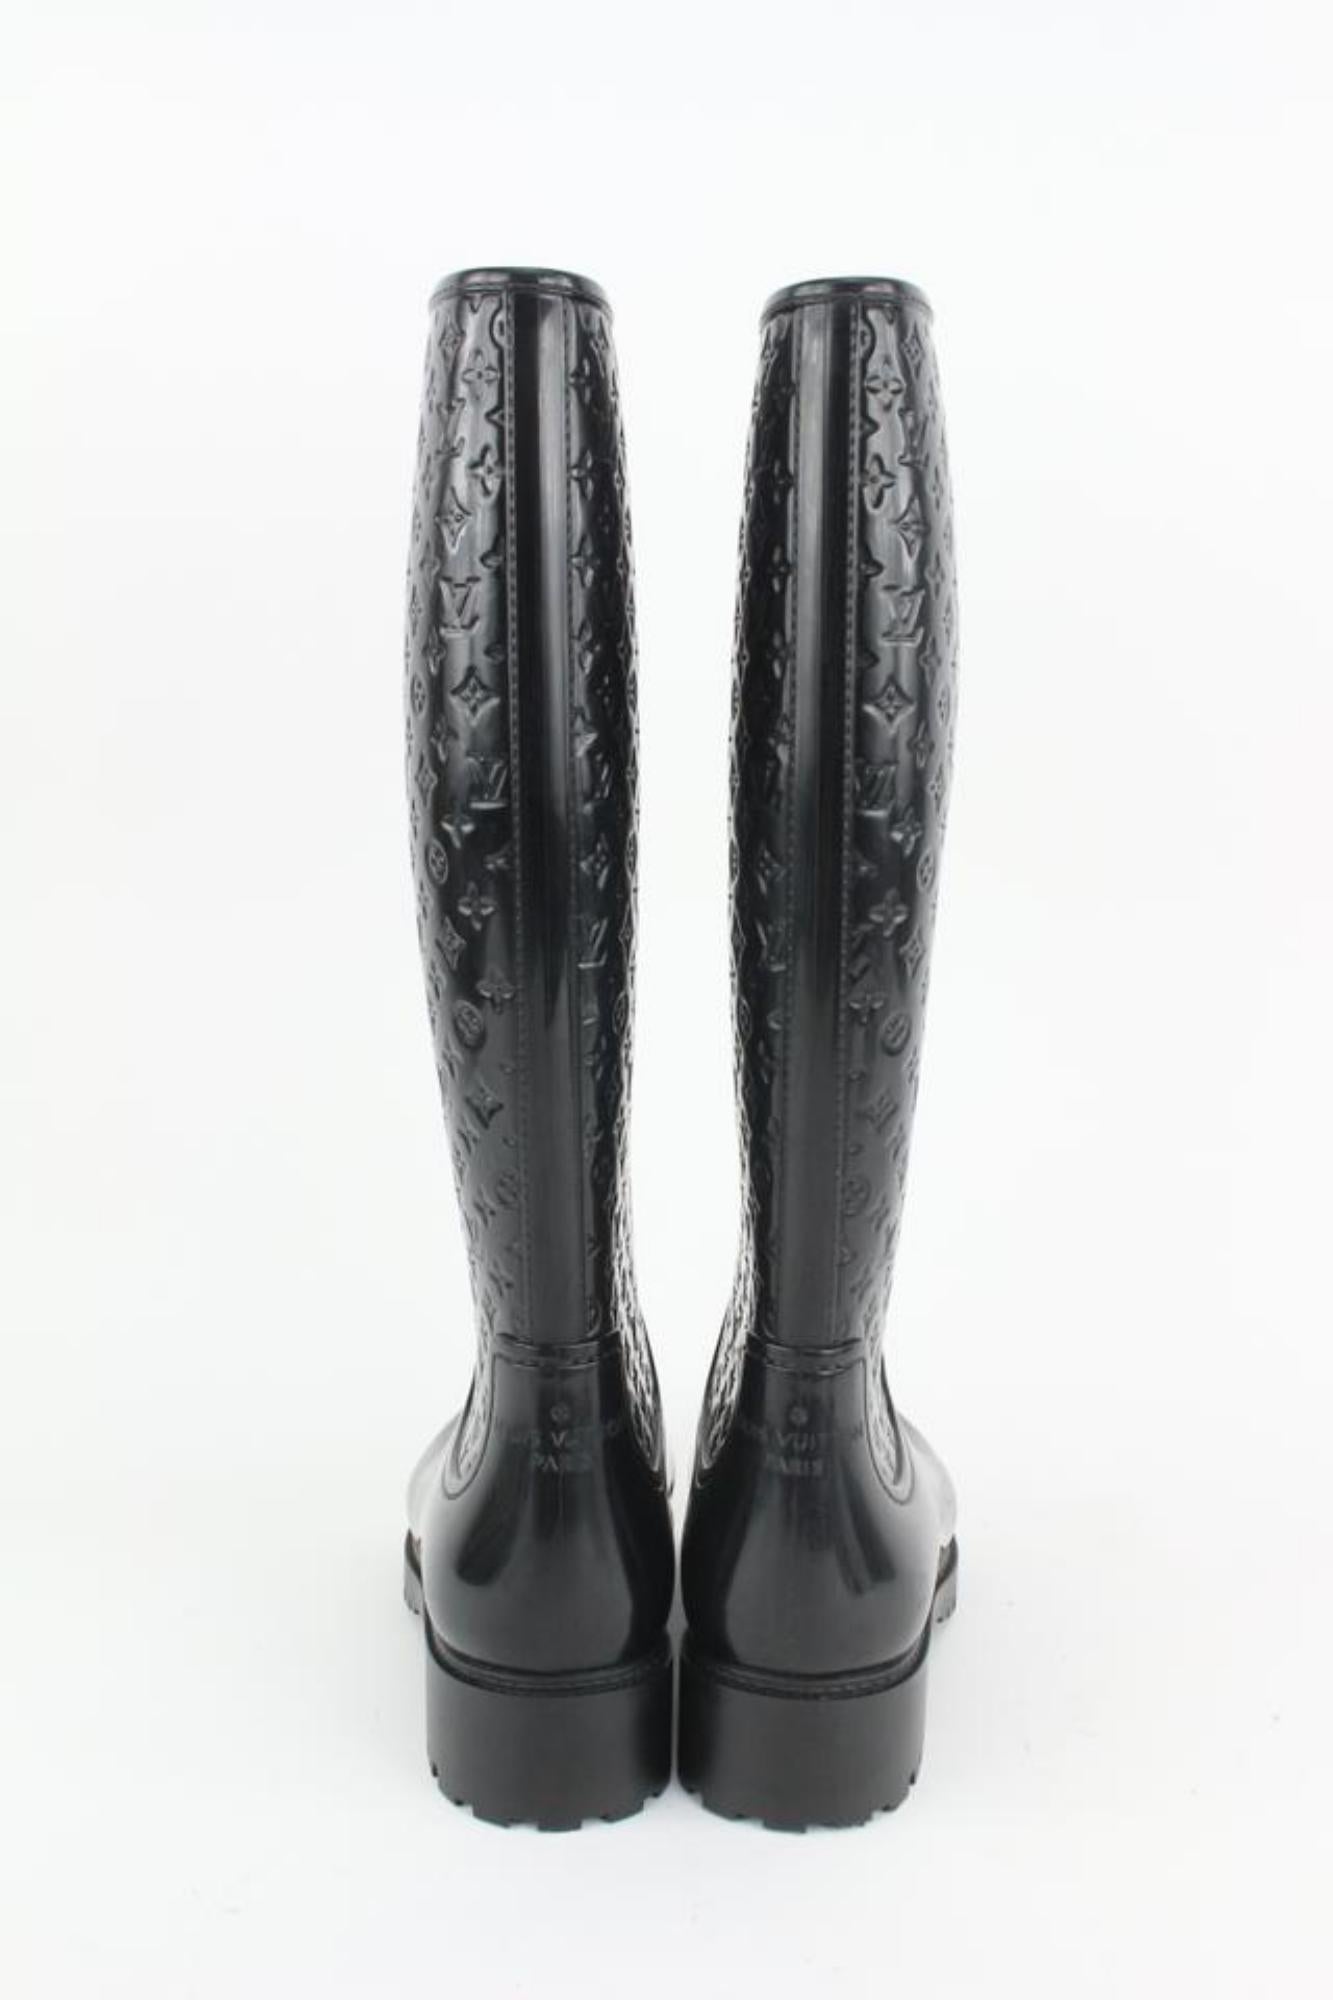 Louis Vuitton Women's 36 Black Rubber Rainboots Tall Rain Boots 111lv9 For Sale 4